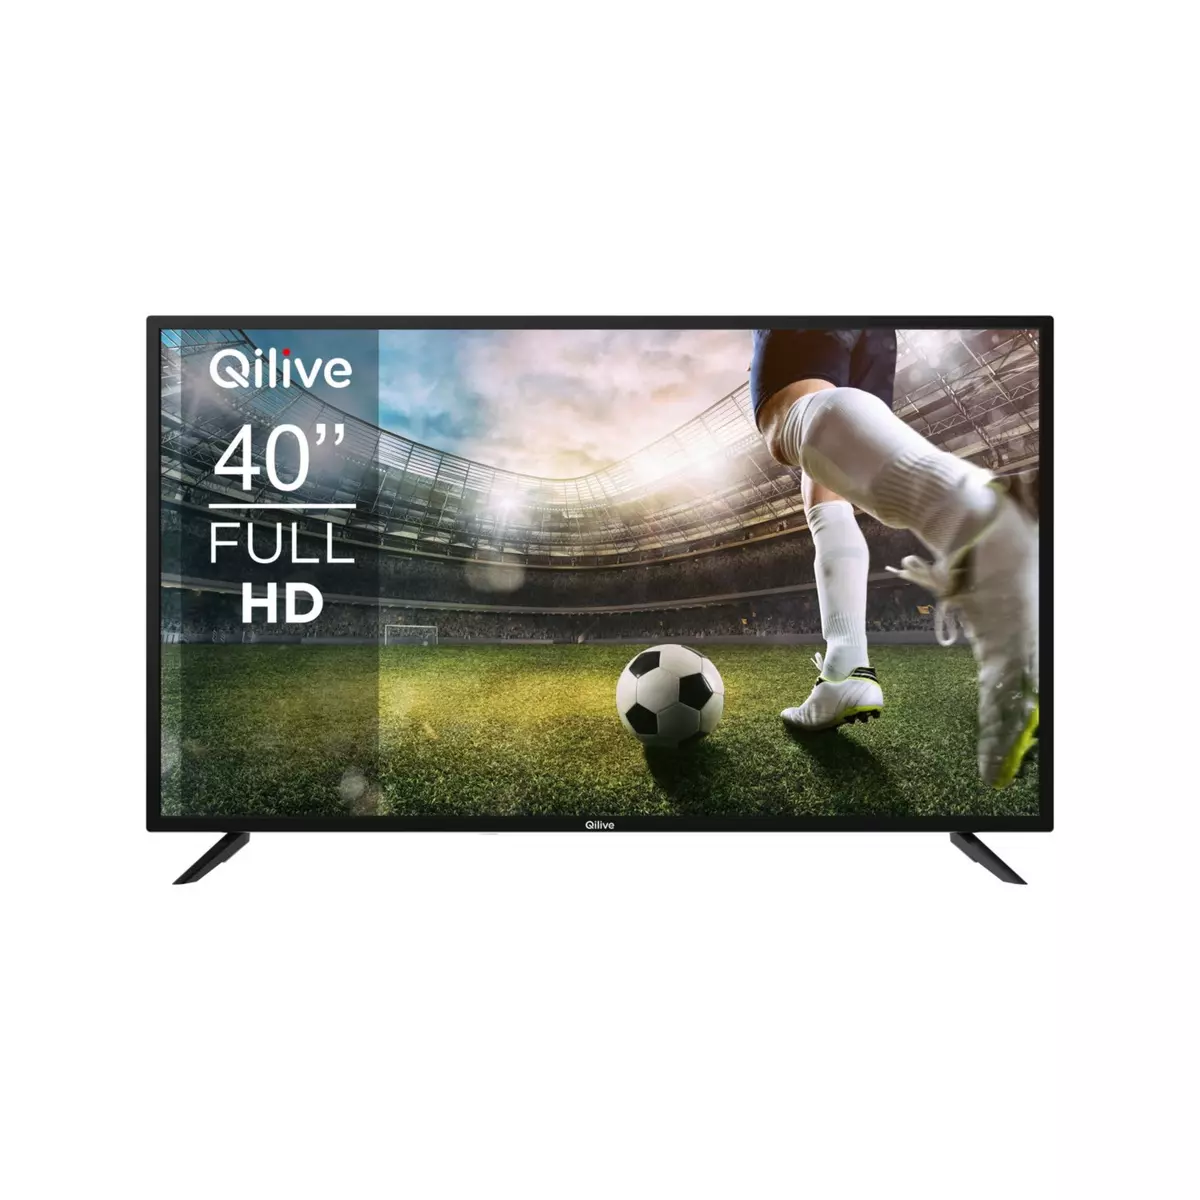 QILIVE Q40H241B TV DLED Full HD 101 cm